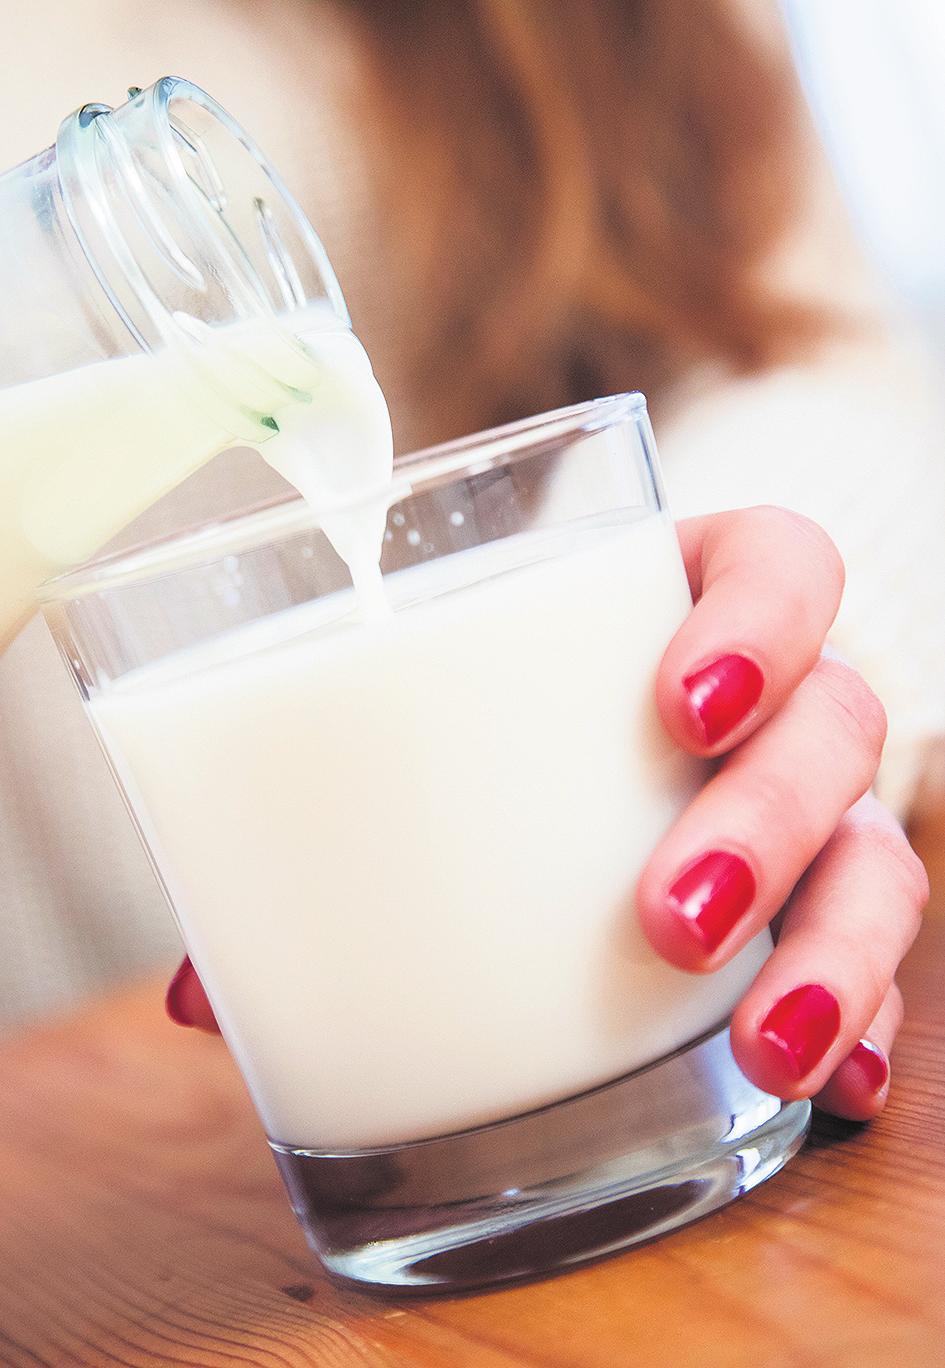 Für Betroffene sind spezielle lactosefreie Produkte nur dann sinnvoll, wenn sie ursprünglich viel Lactose enthalten. Dazu gehört zum Beispiel Milch.